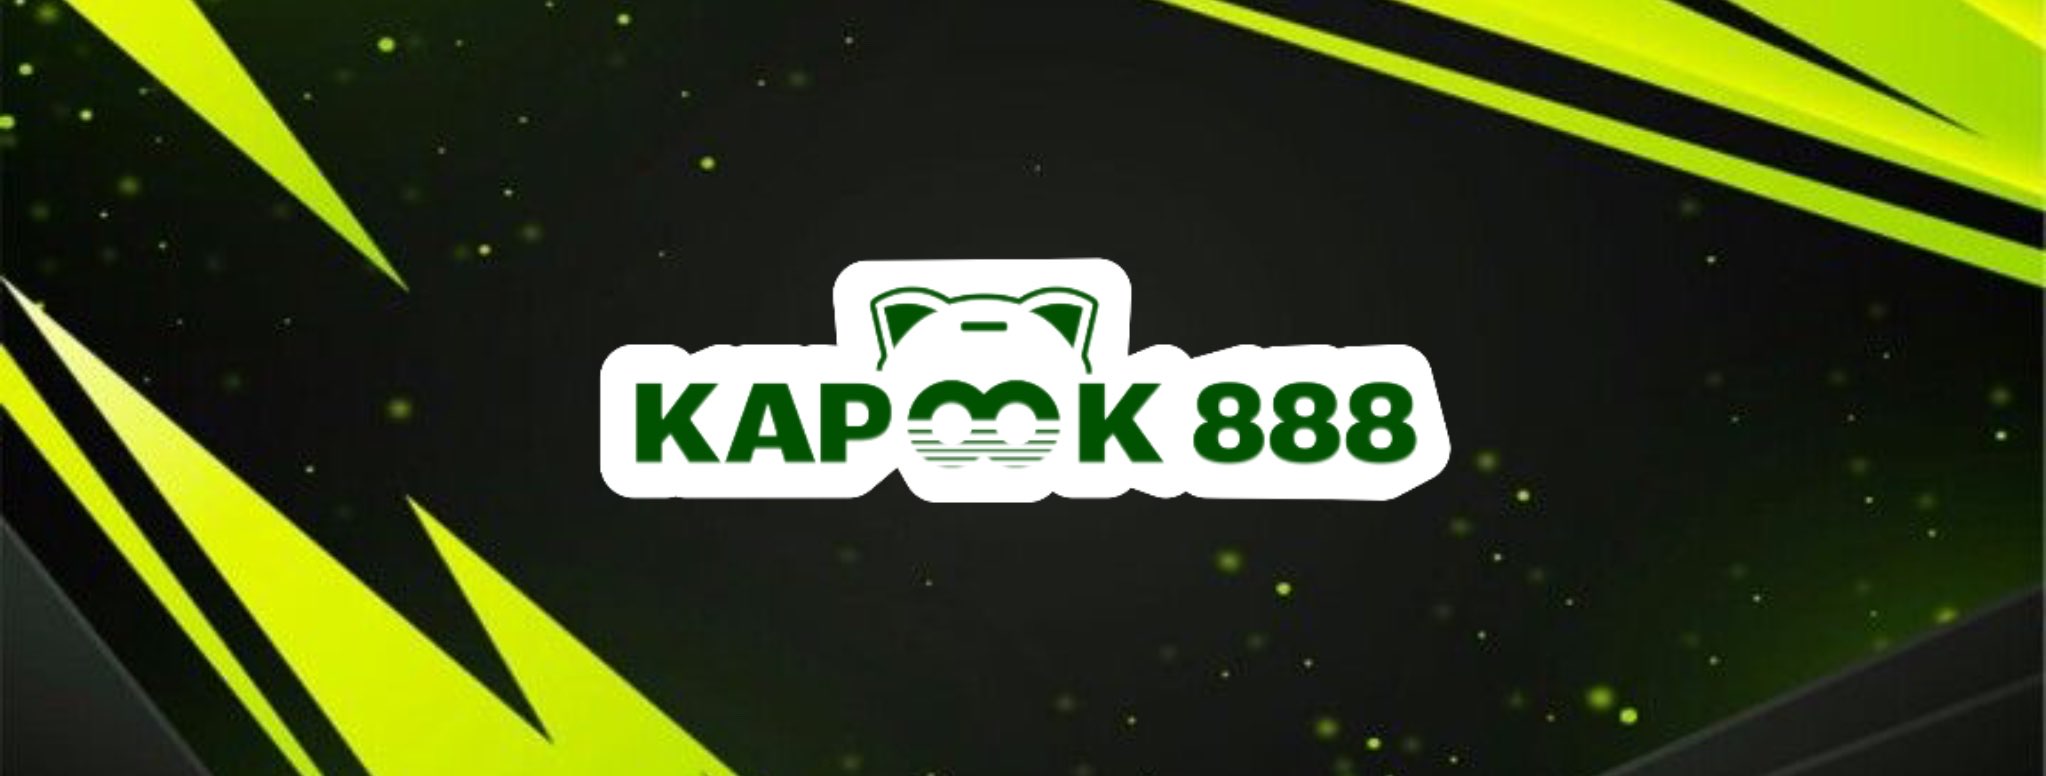 มาเข้าร่วมสนุกกับเกมสล็อตที่สุดพิเศษกับ kapook 888 สุดยอดความสนุกและโชคลาภ!